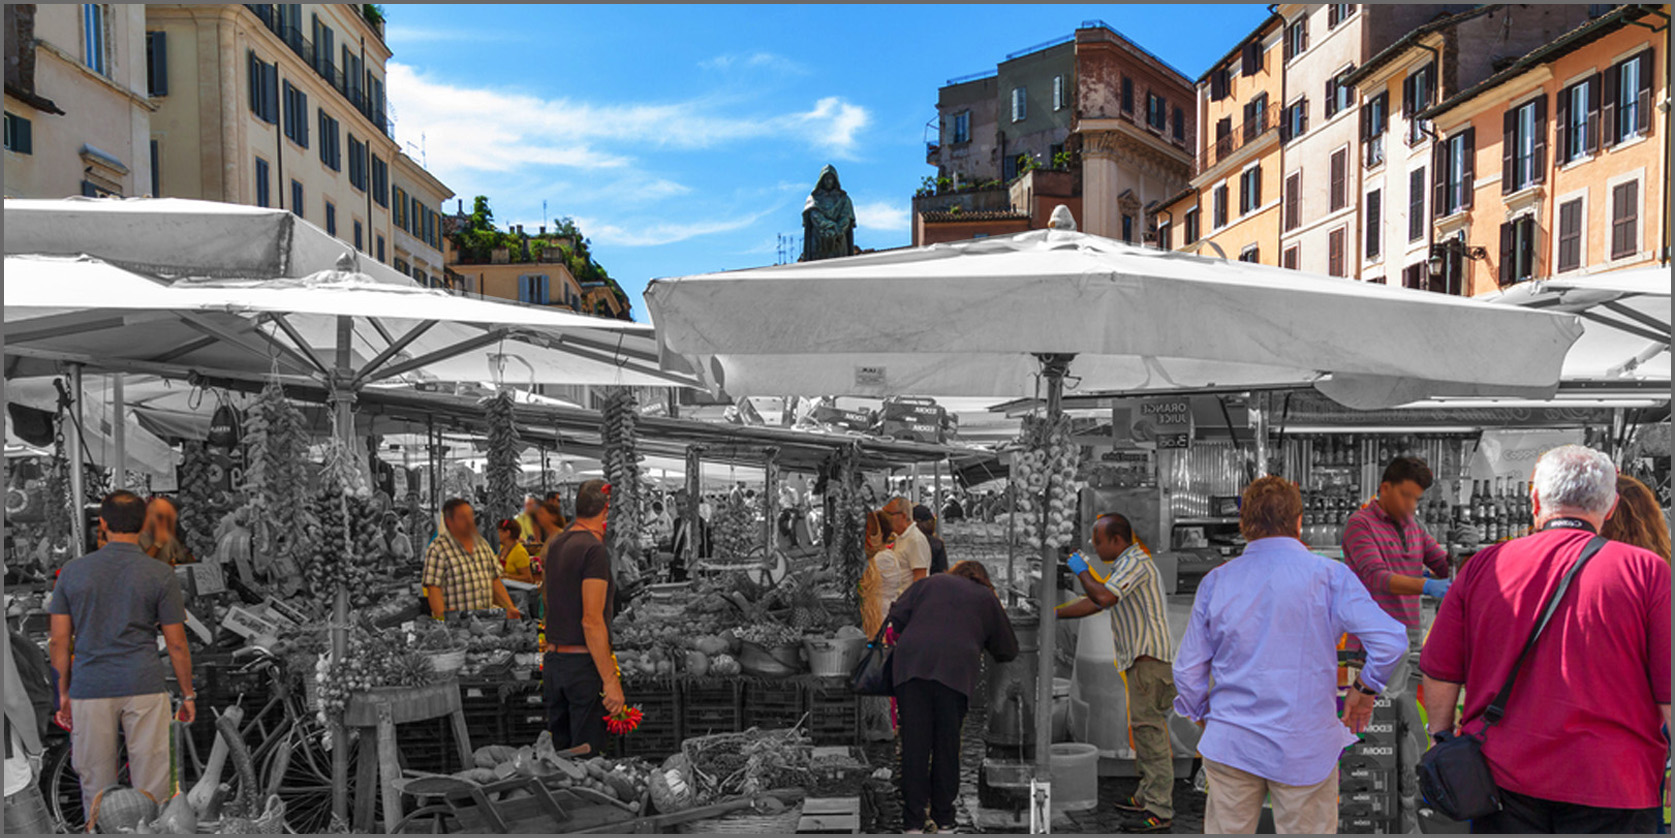 mercato in Piazza